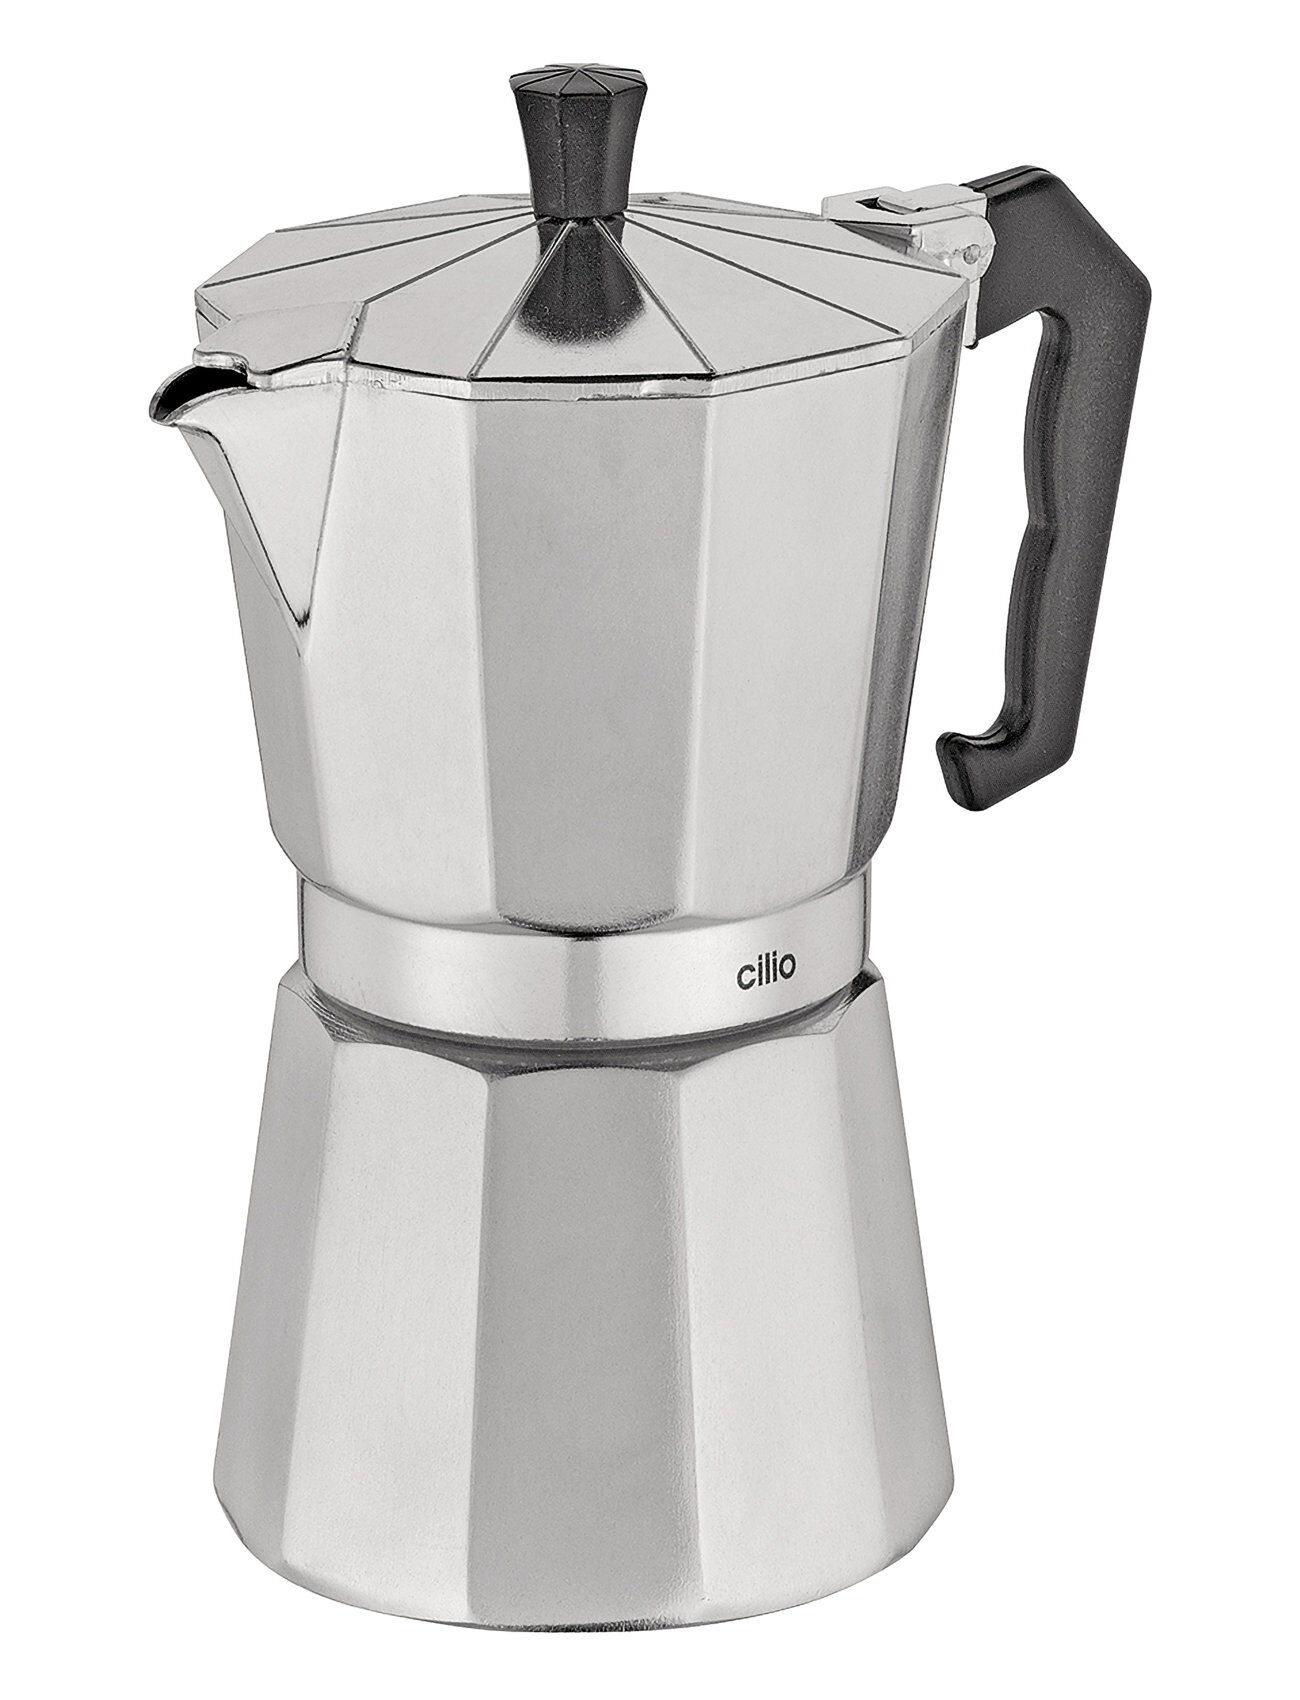 cilio Espresso Maker Classico Induktion 6 Cups Home Kitchen Kitchen Appliances Coffee Makers Moka Pots Sølv Cilio